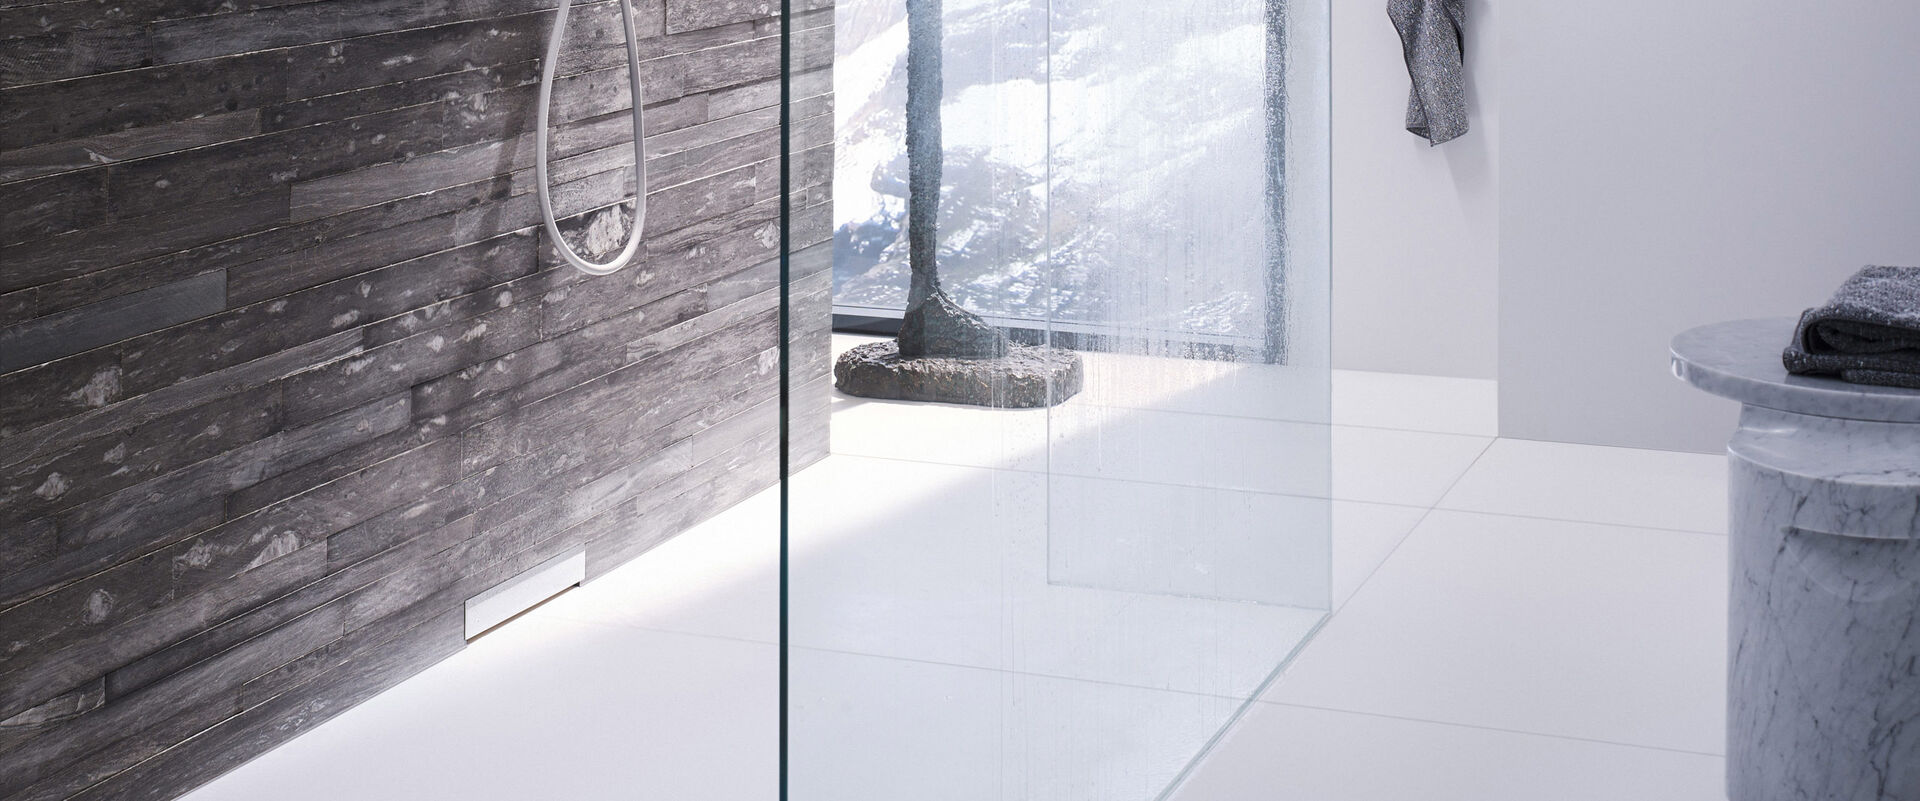 Badezimmer mit einer Dusche, in der ein Geberit Wandablauf installiert ist. Die Dusche ist mit einer Glaswand ausgestattet. 